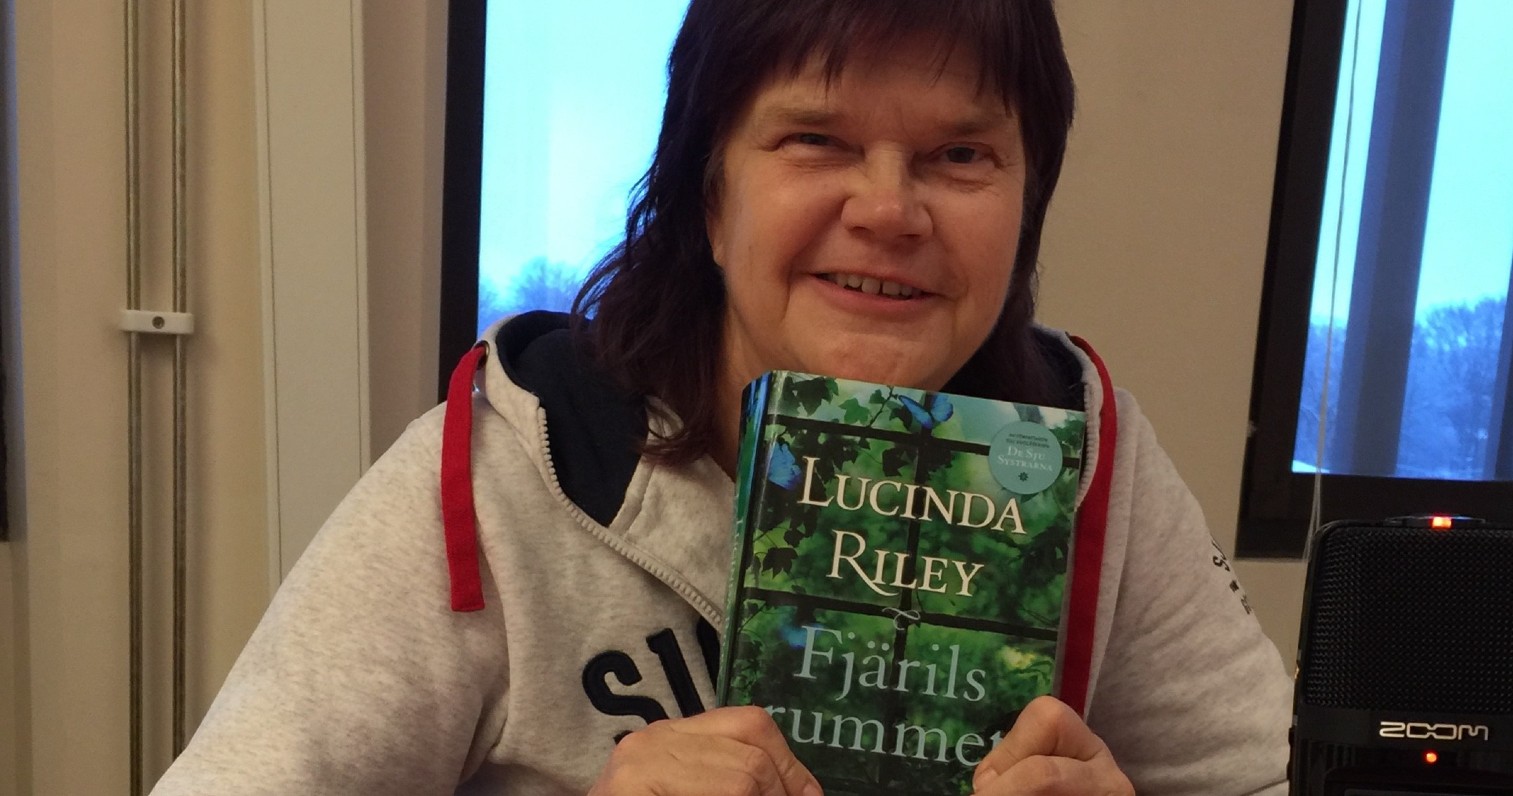 Yvonne håller upp boken Fjärilsrummet av Lucinda Riley